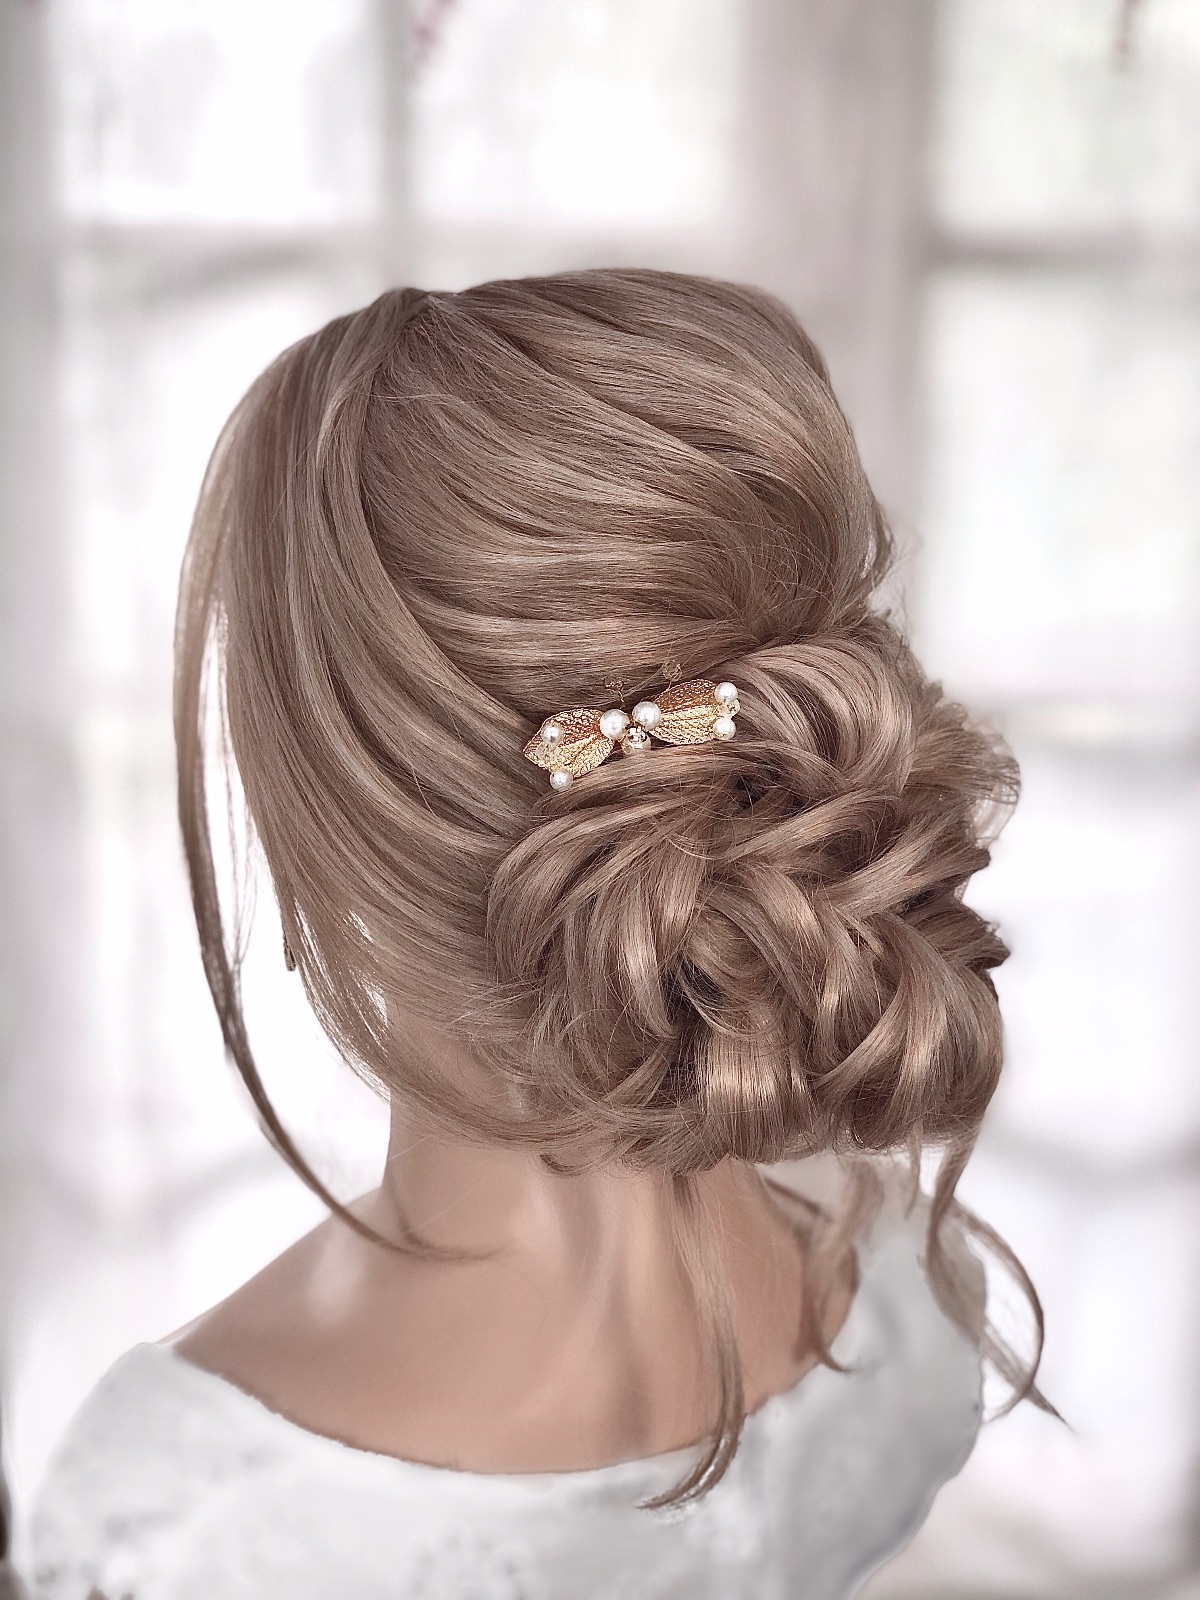 Bridal Hair & makeup by Emma-Image-123